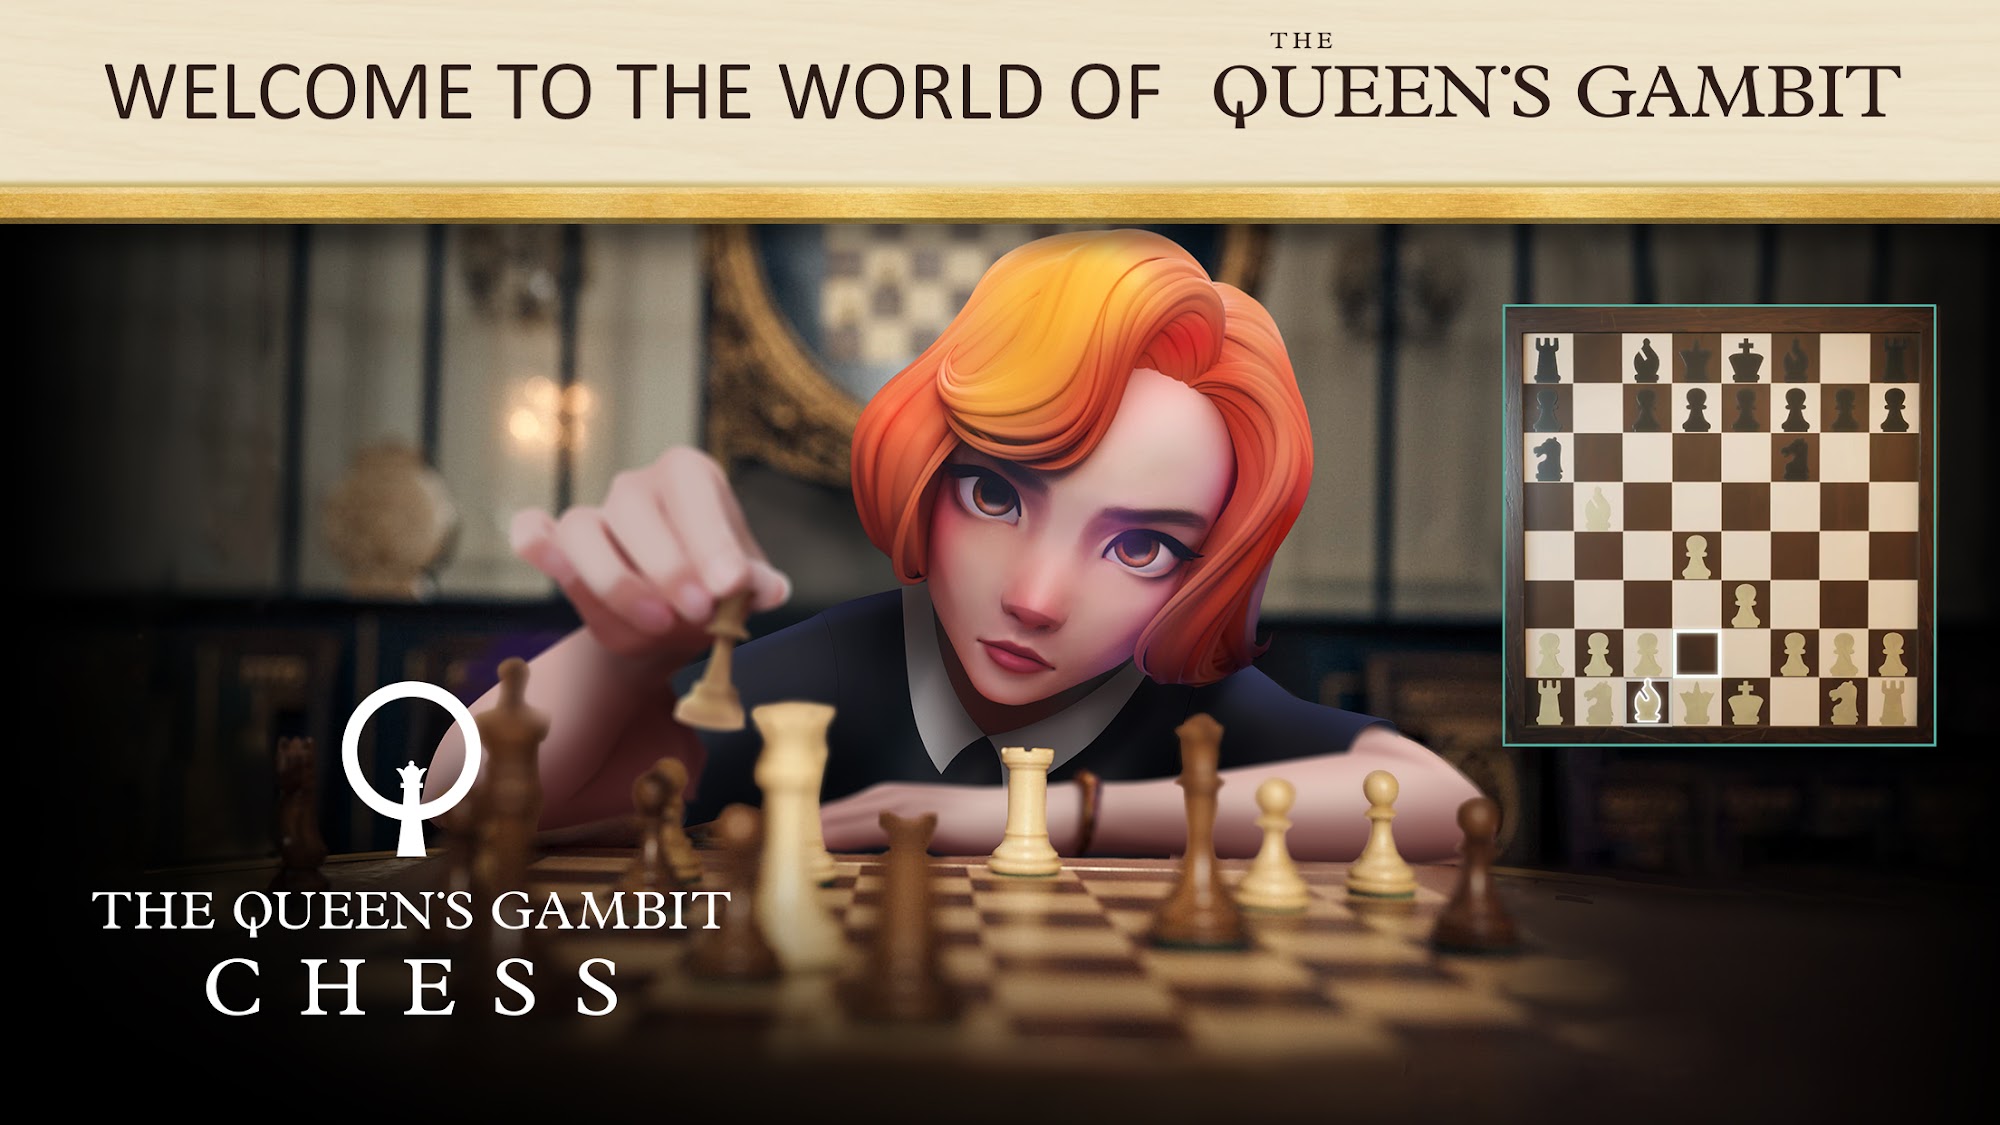 The Queen's Gambit Chess スクリーンショット1